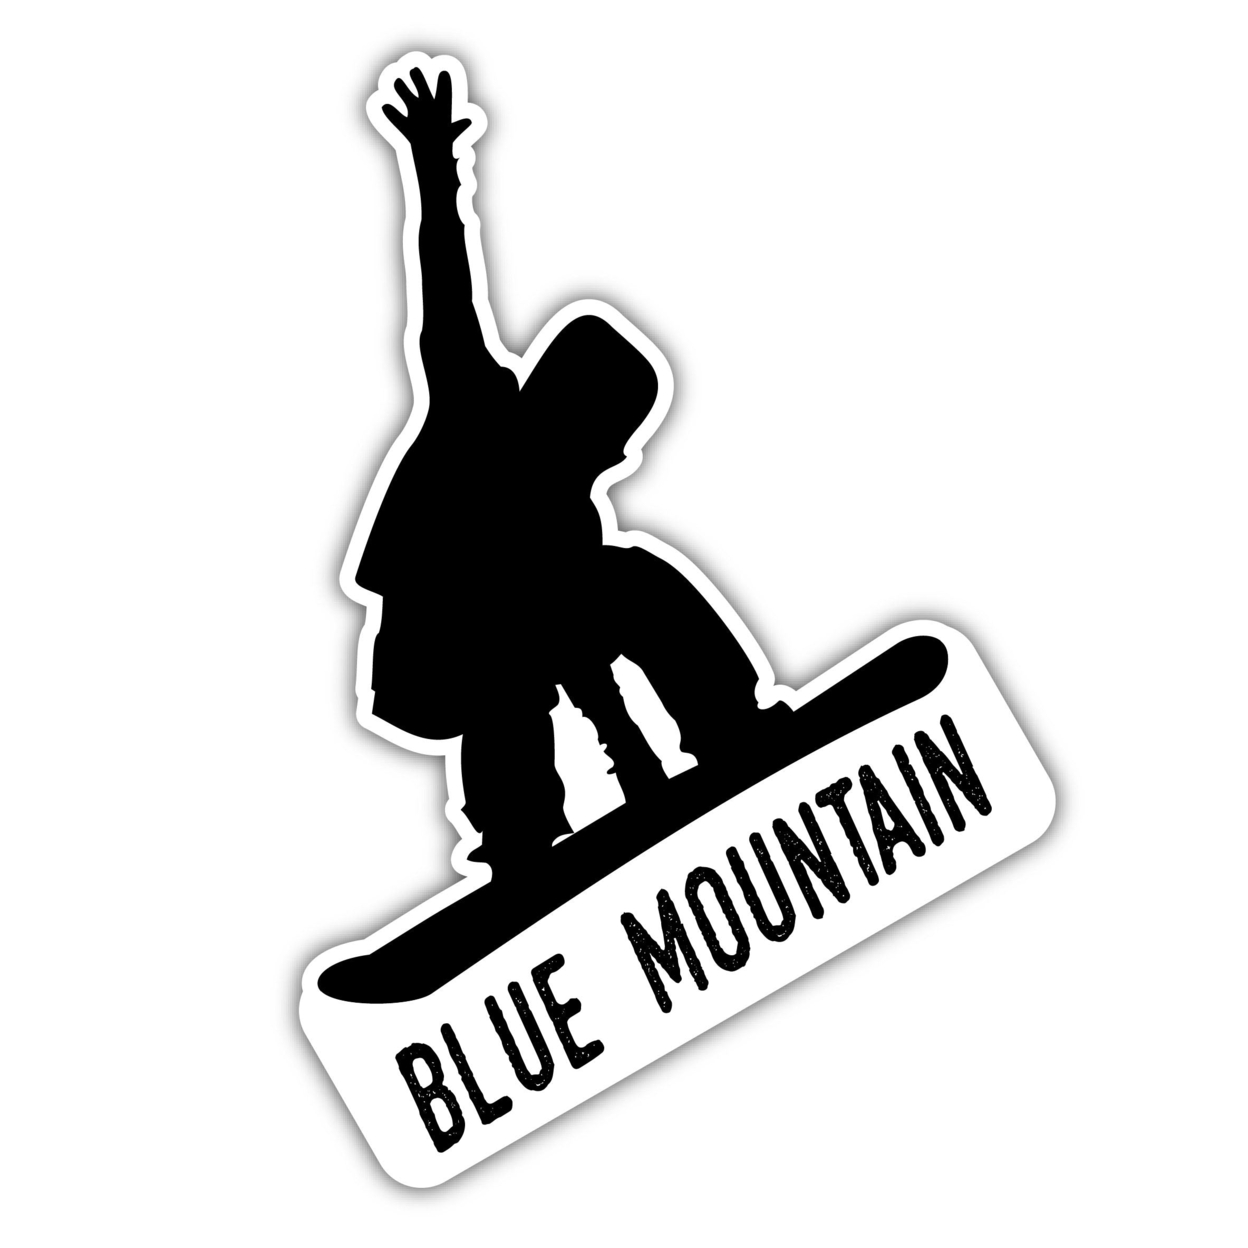 Blue Mountain Pennsylvania Ski Adventures Souvenir 4 Inch Vinyl Decal Sticker Mountain Design